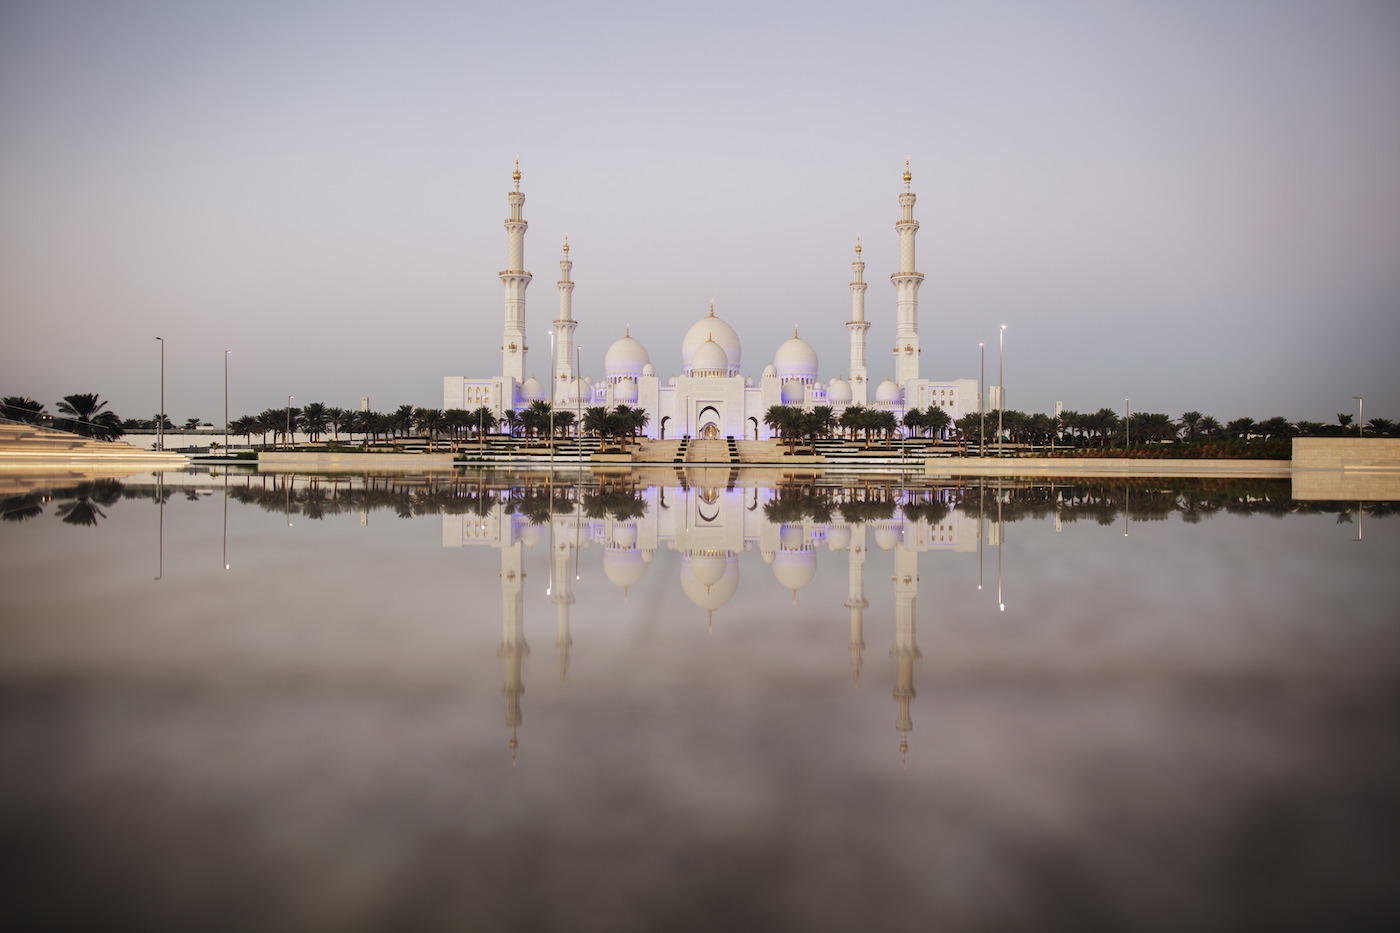 Der FalconLens Award in Abu Dhabi: Aufregender kann die Adventszeit nicht sein 5